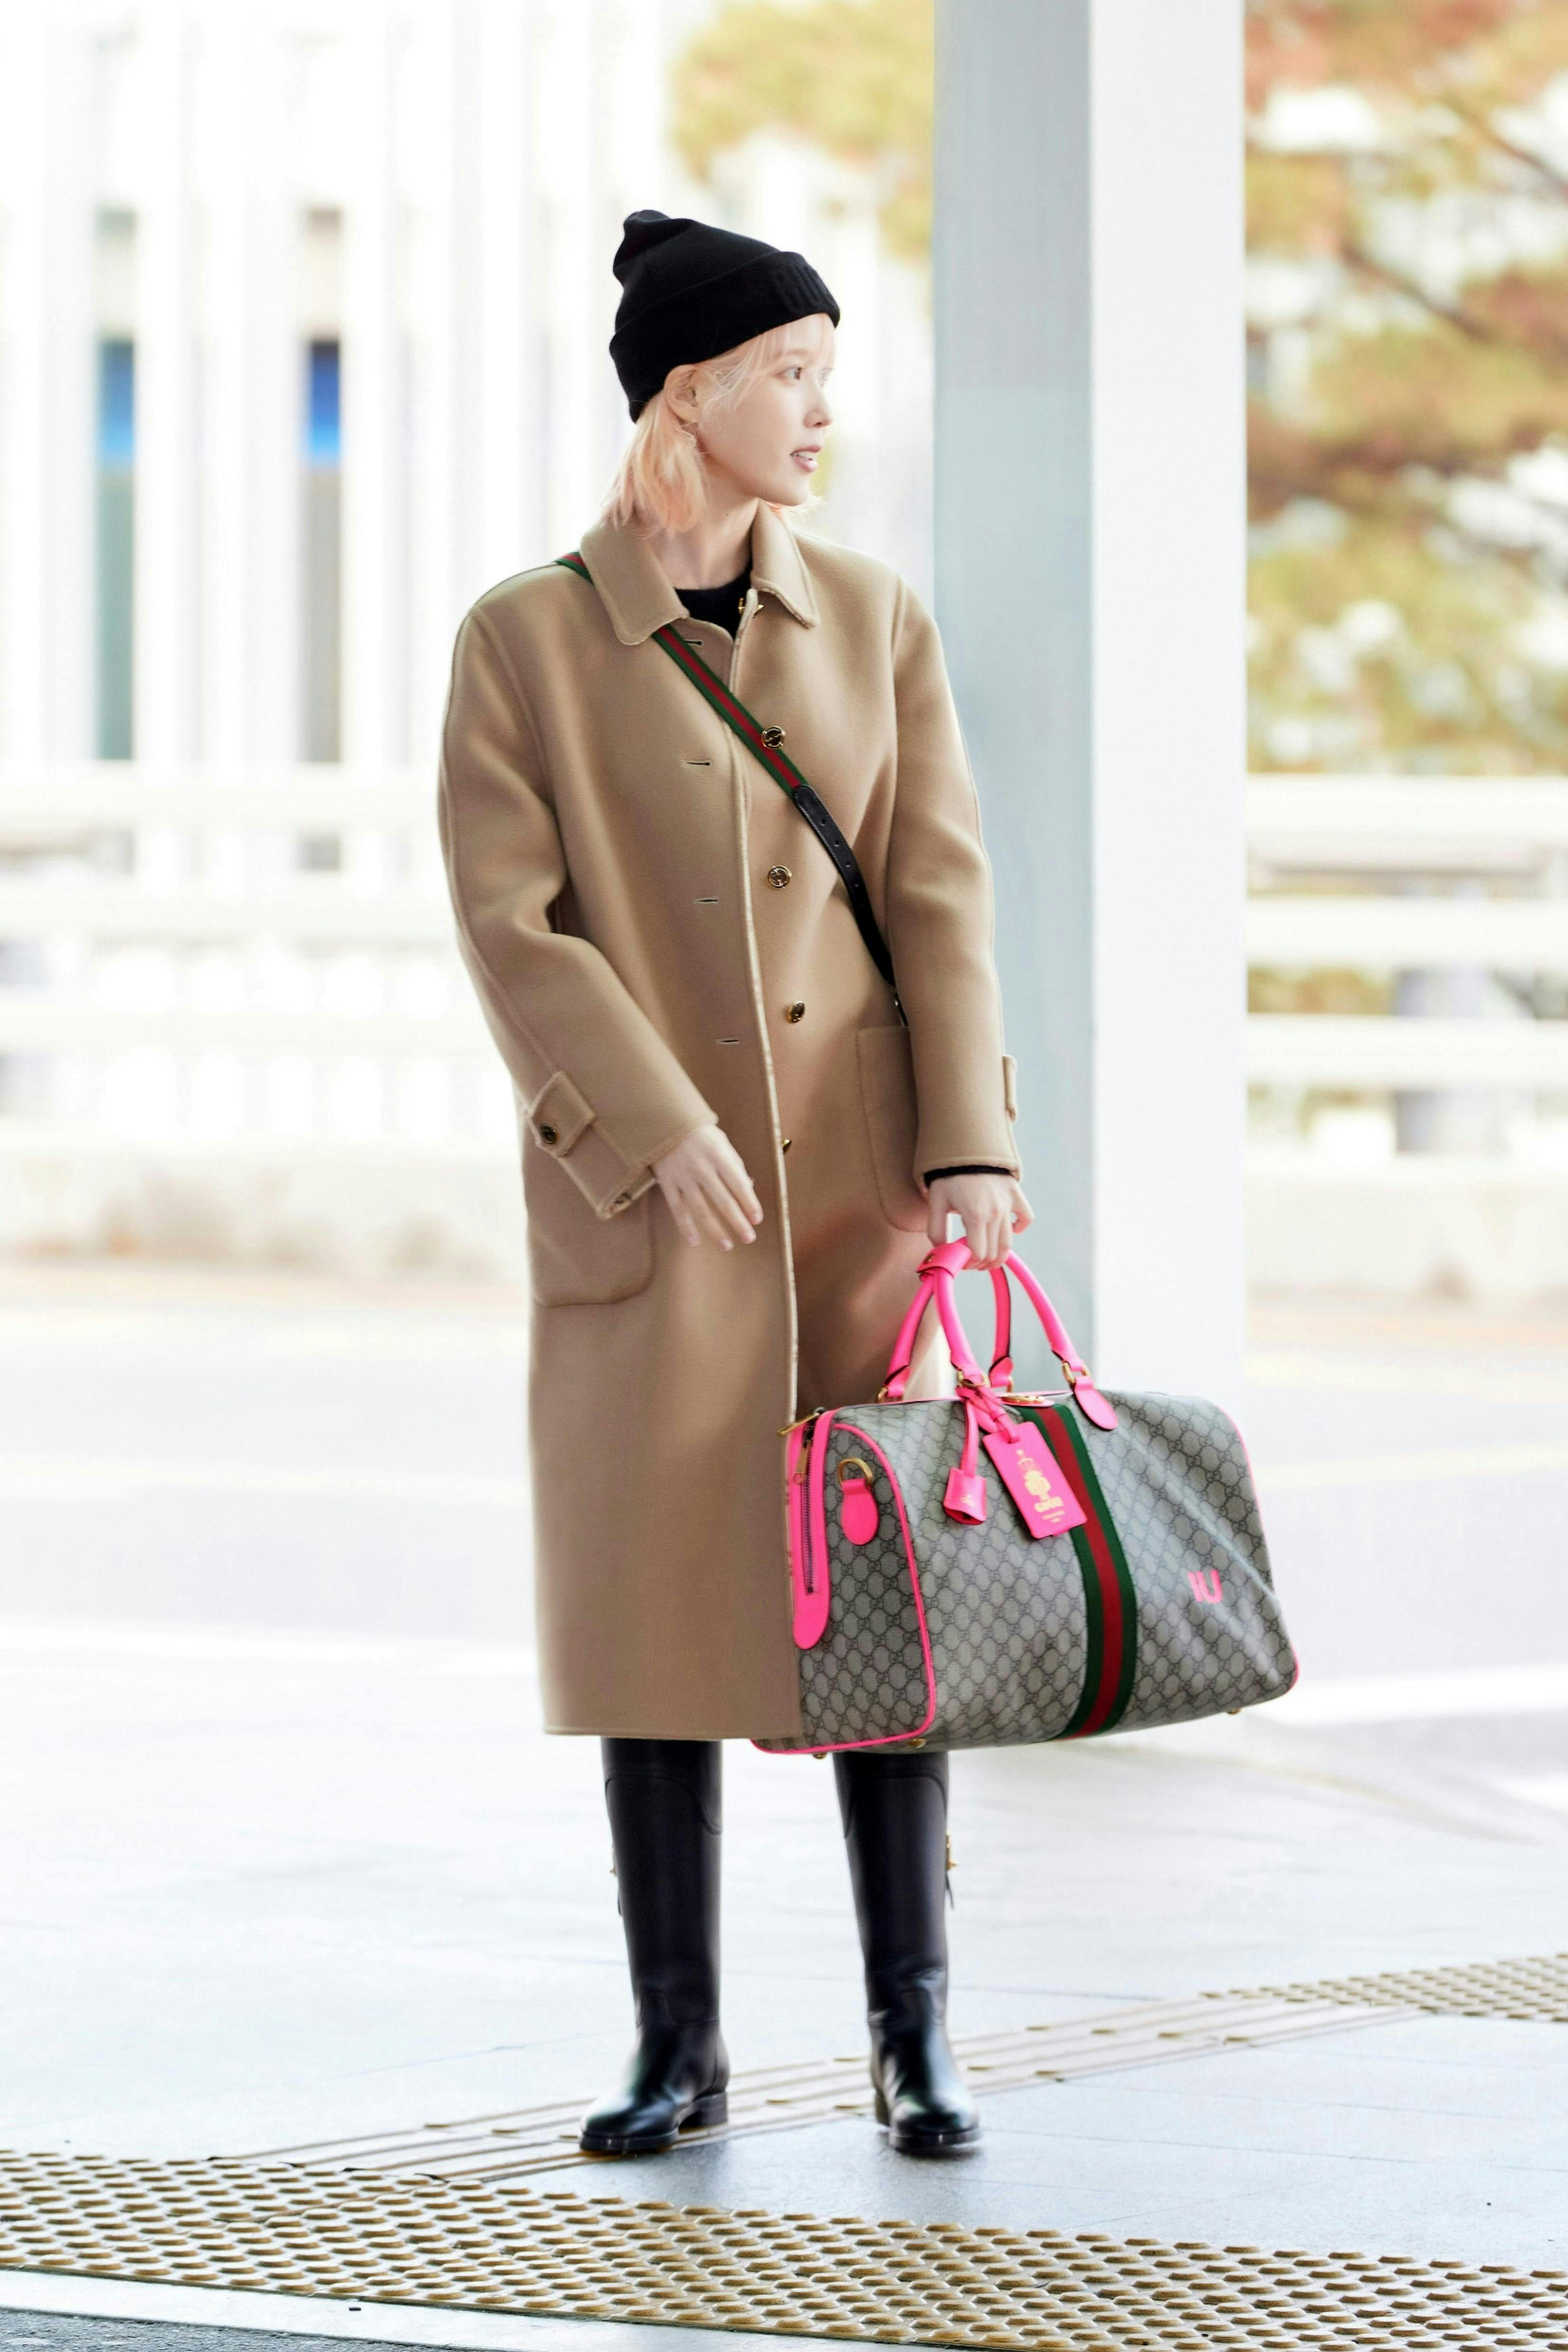 clothing coat accessories bag handbag lady person purse overcoat